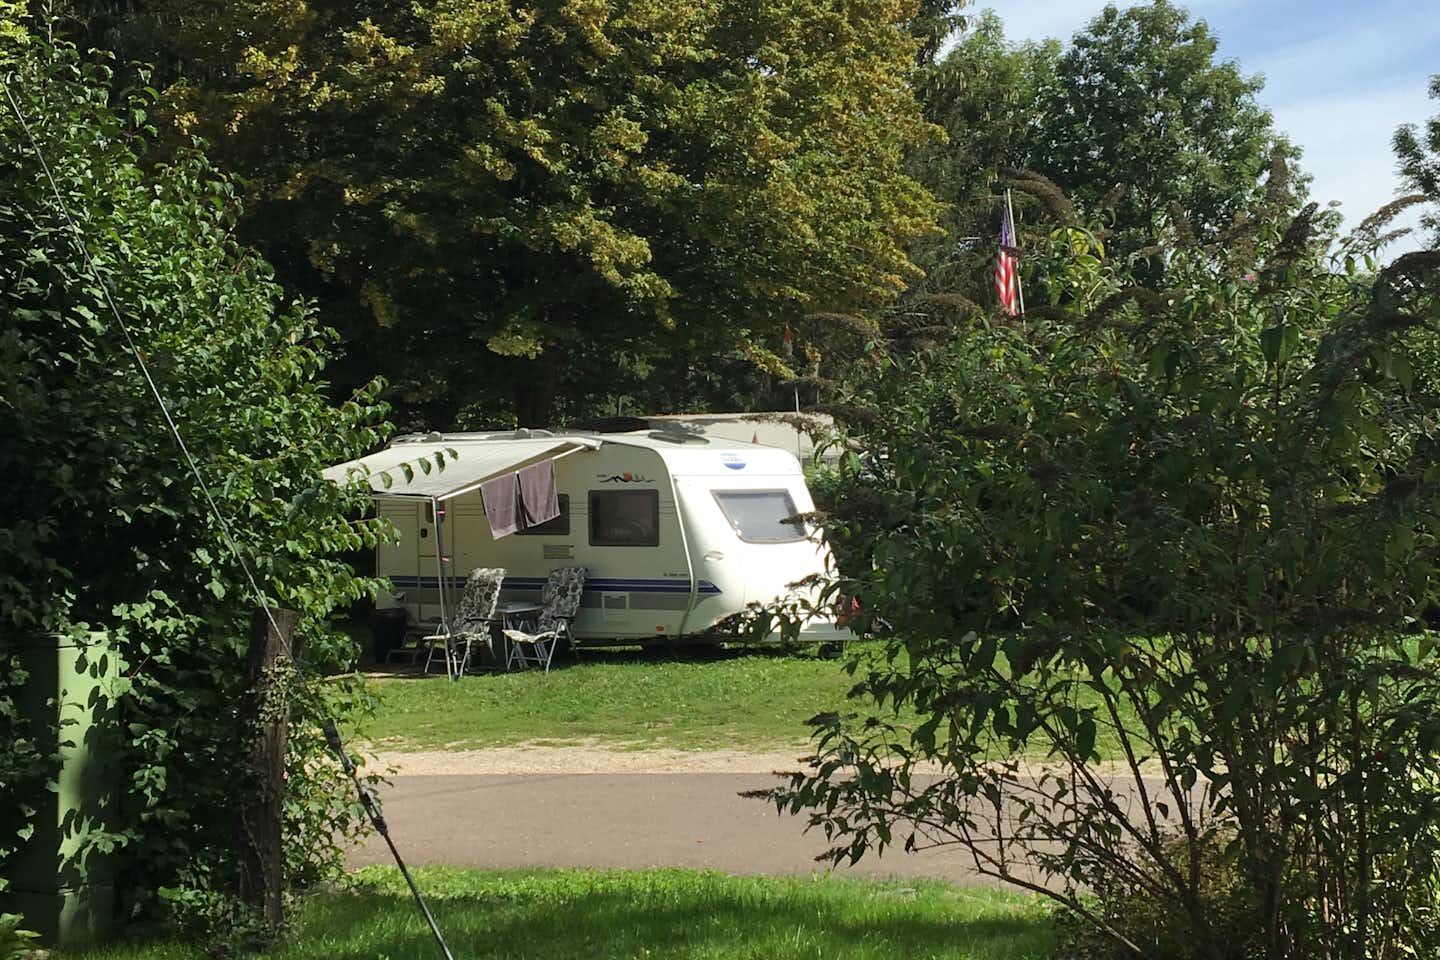 Campingplatz Aichelberg - Wohnmobil im Grünen umringt von Hecken und Bäumen auf dem Campingplatz